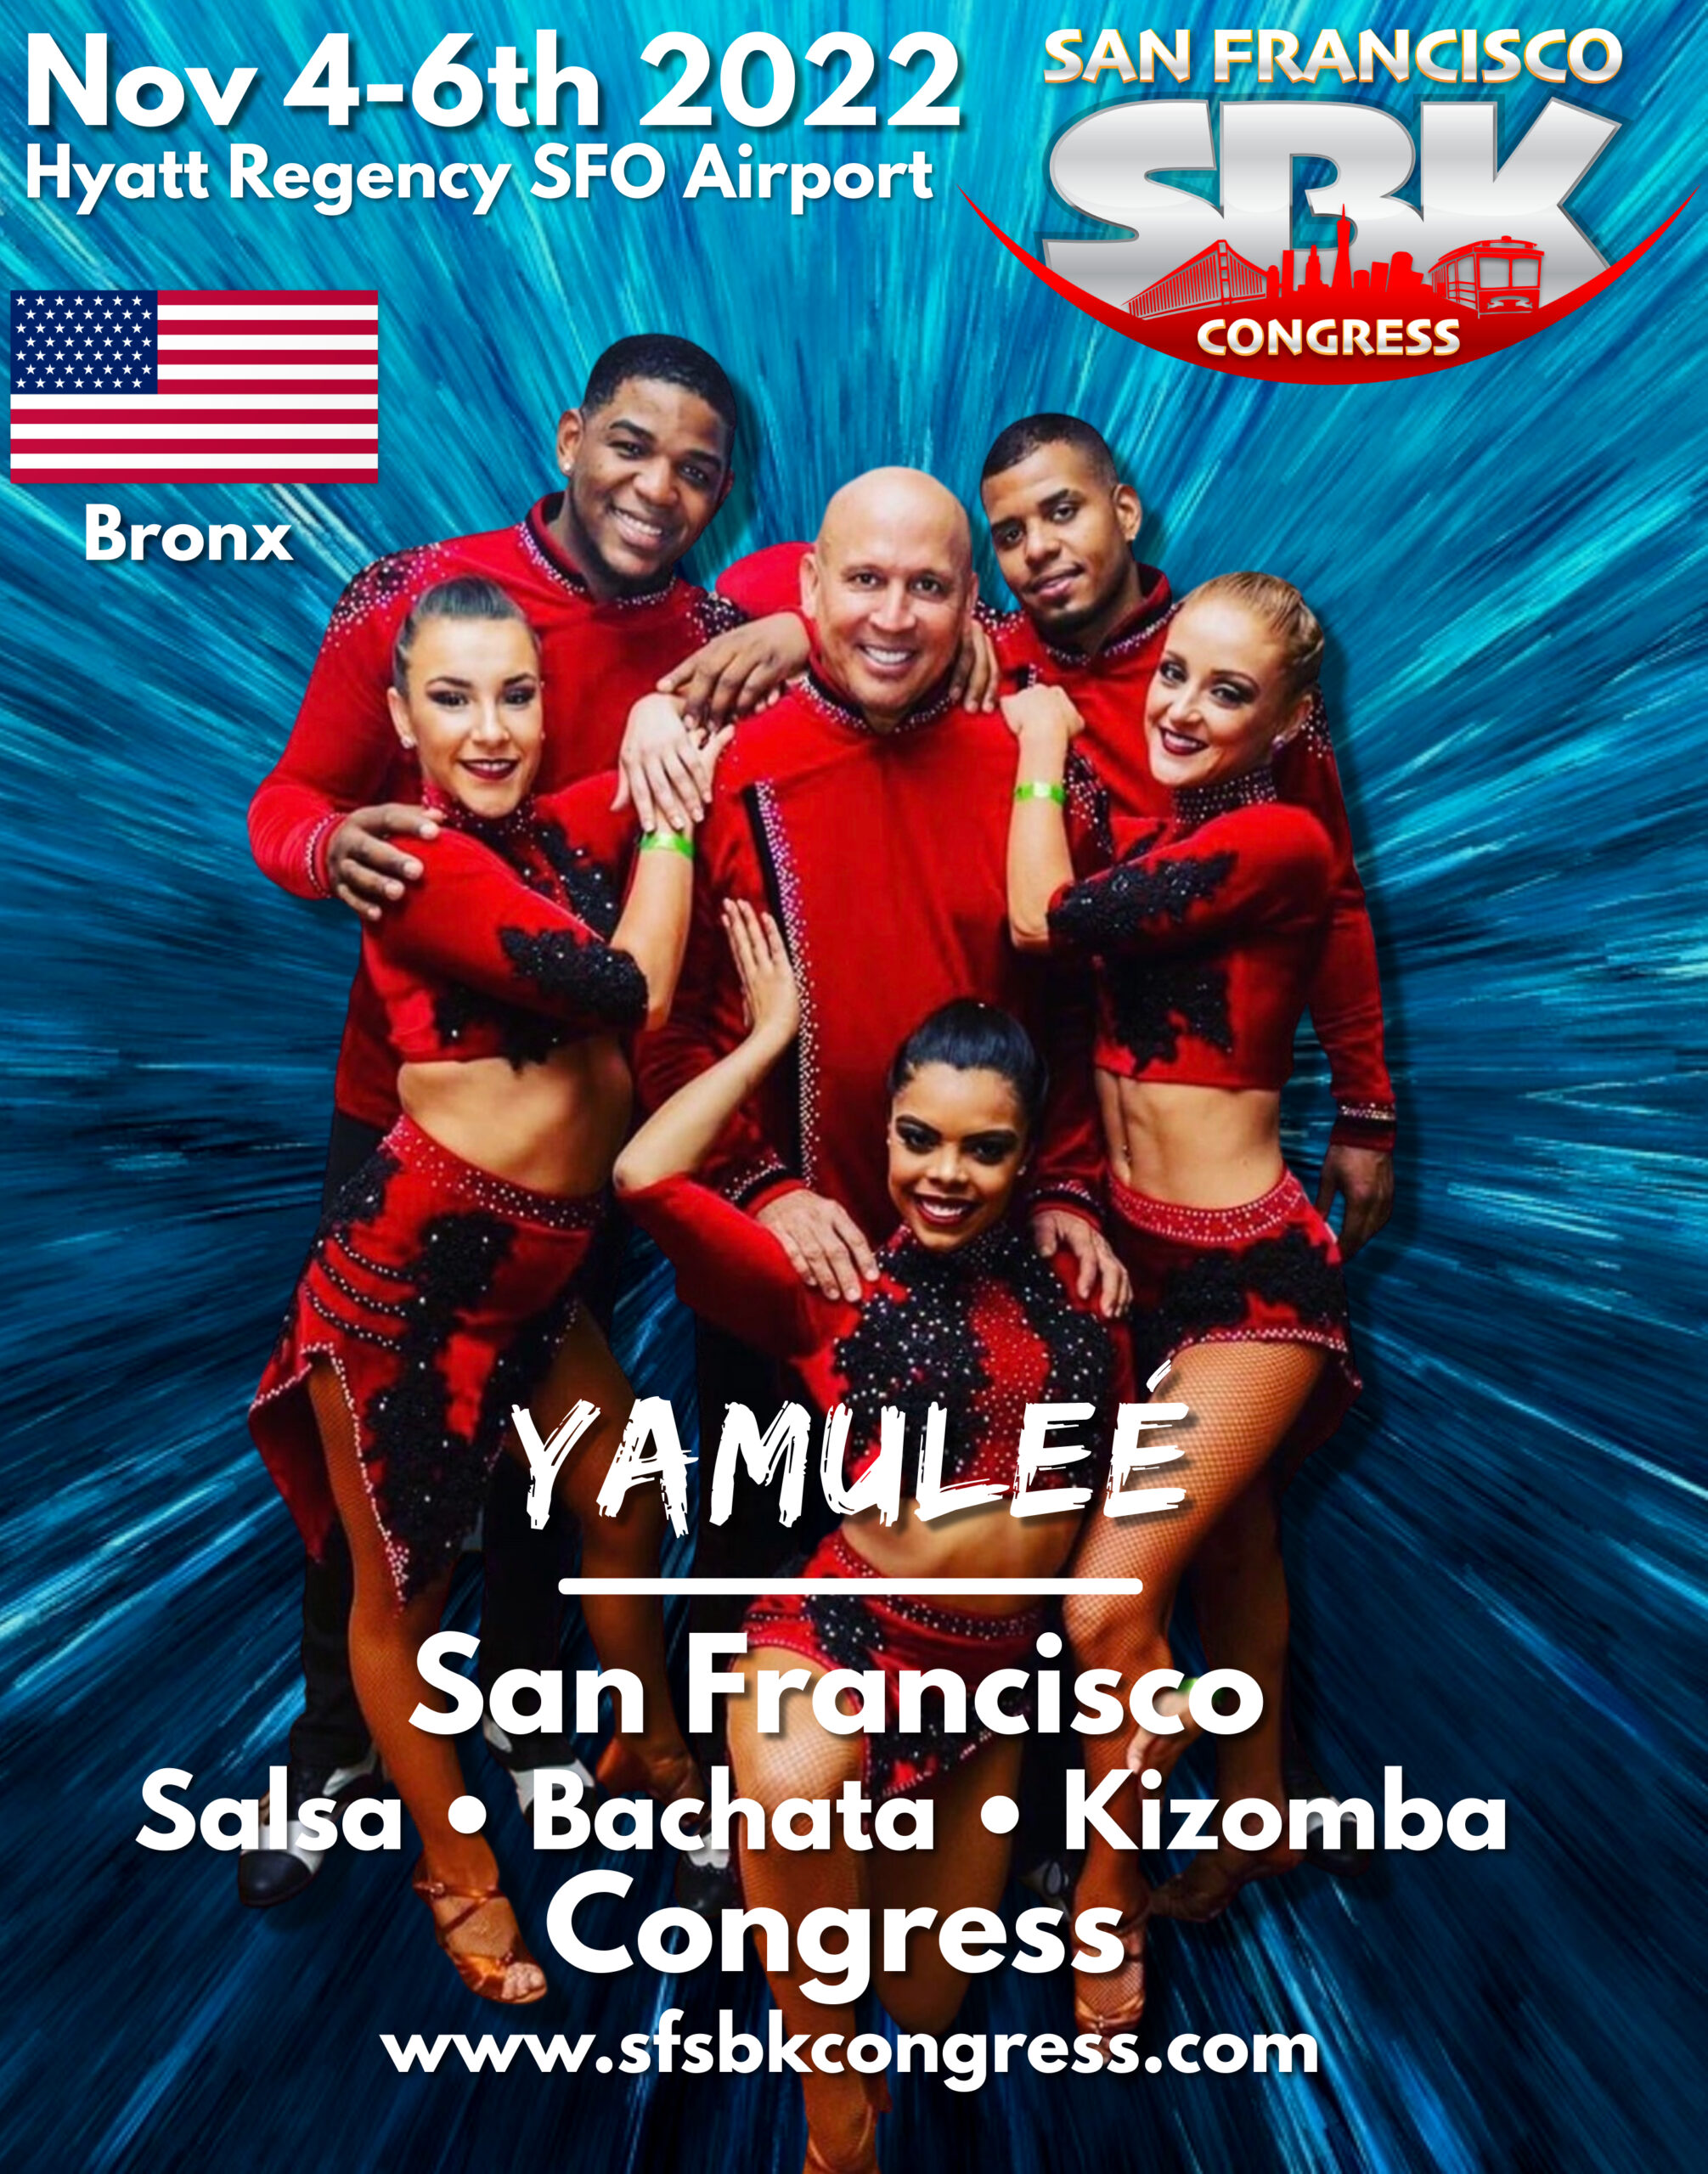 Yamulee Dance Company